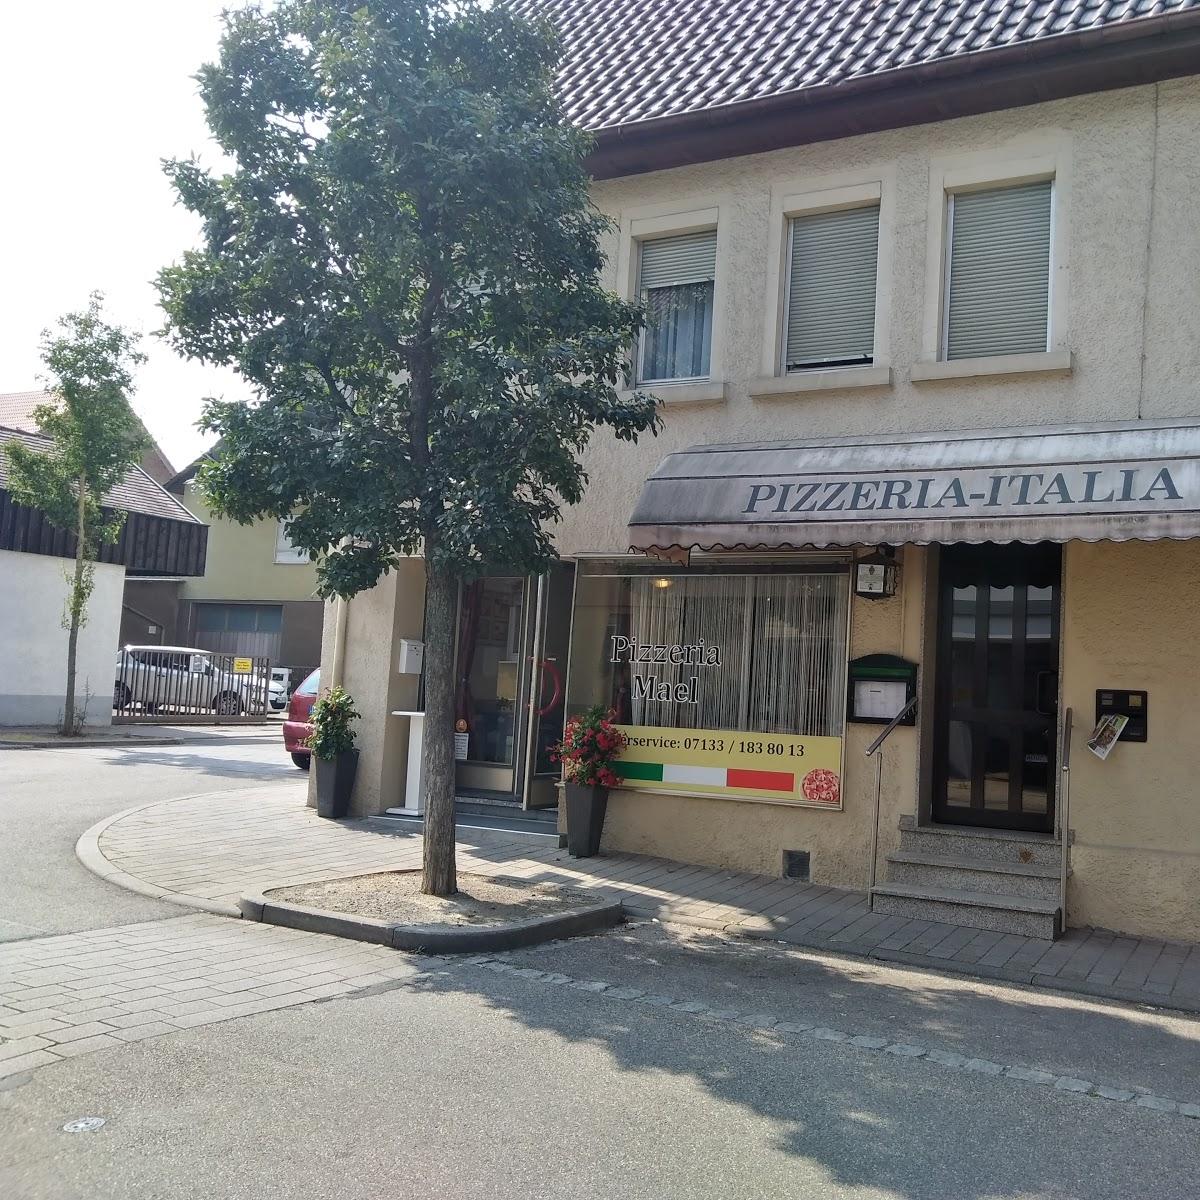 Restaurant "Lieferservice lauffen am neckar Mael" in  Neckar